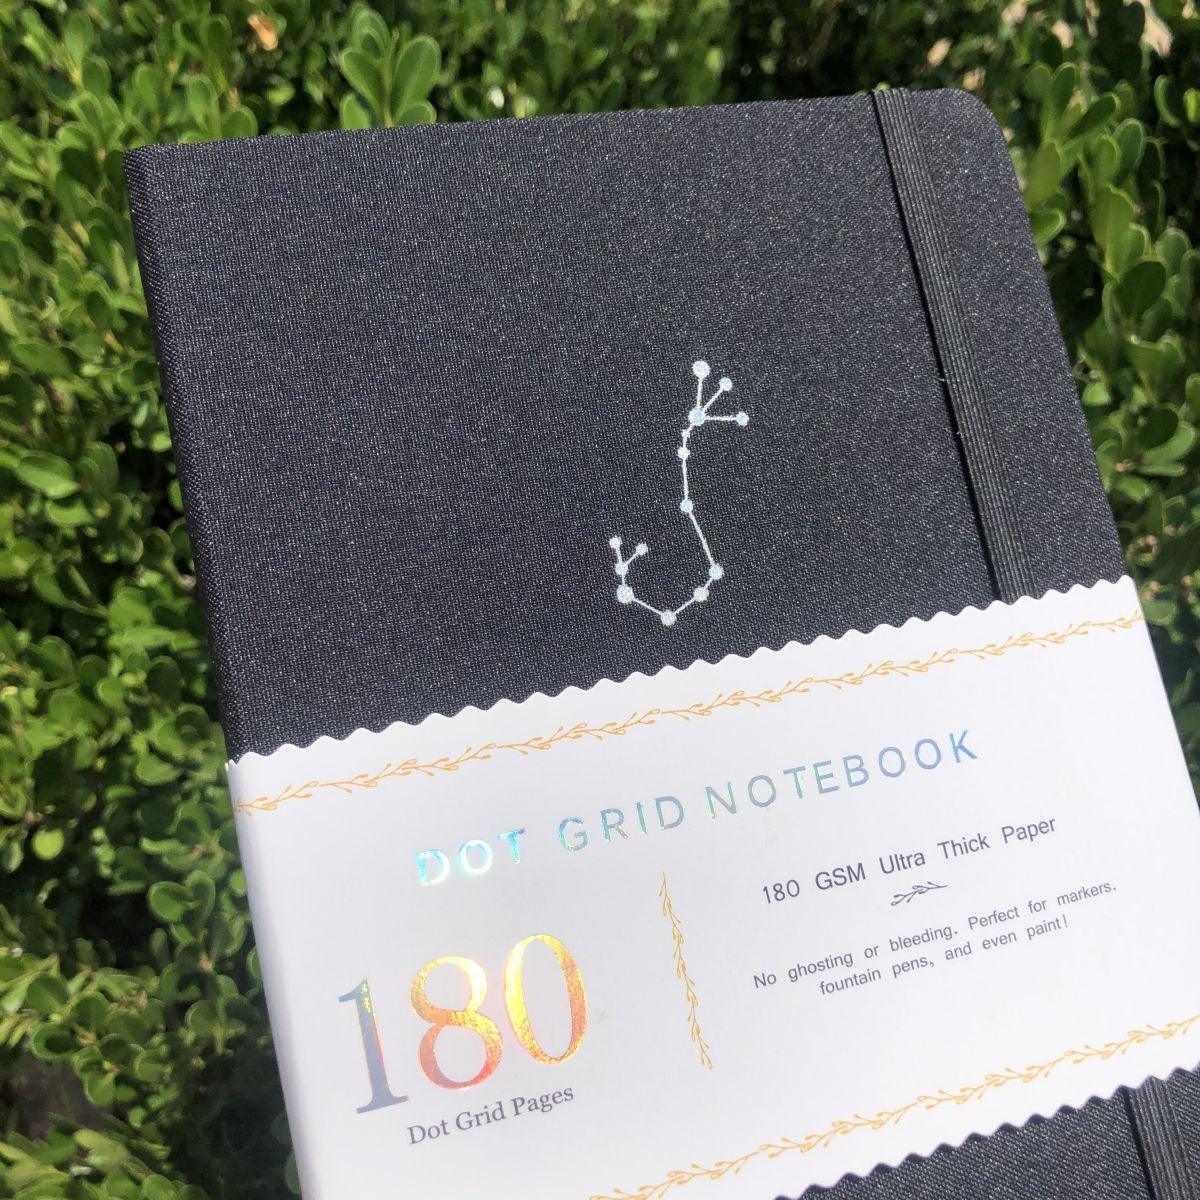 A5 Zodiac Scorpio Bullet Journal Dot Grid Notebook - bukenotebook